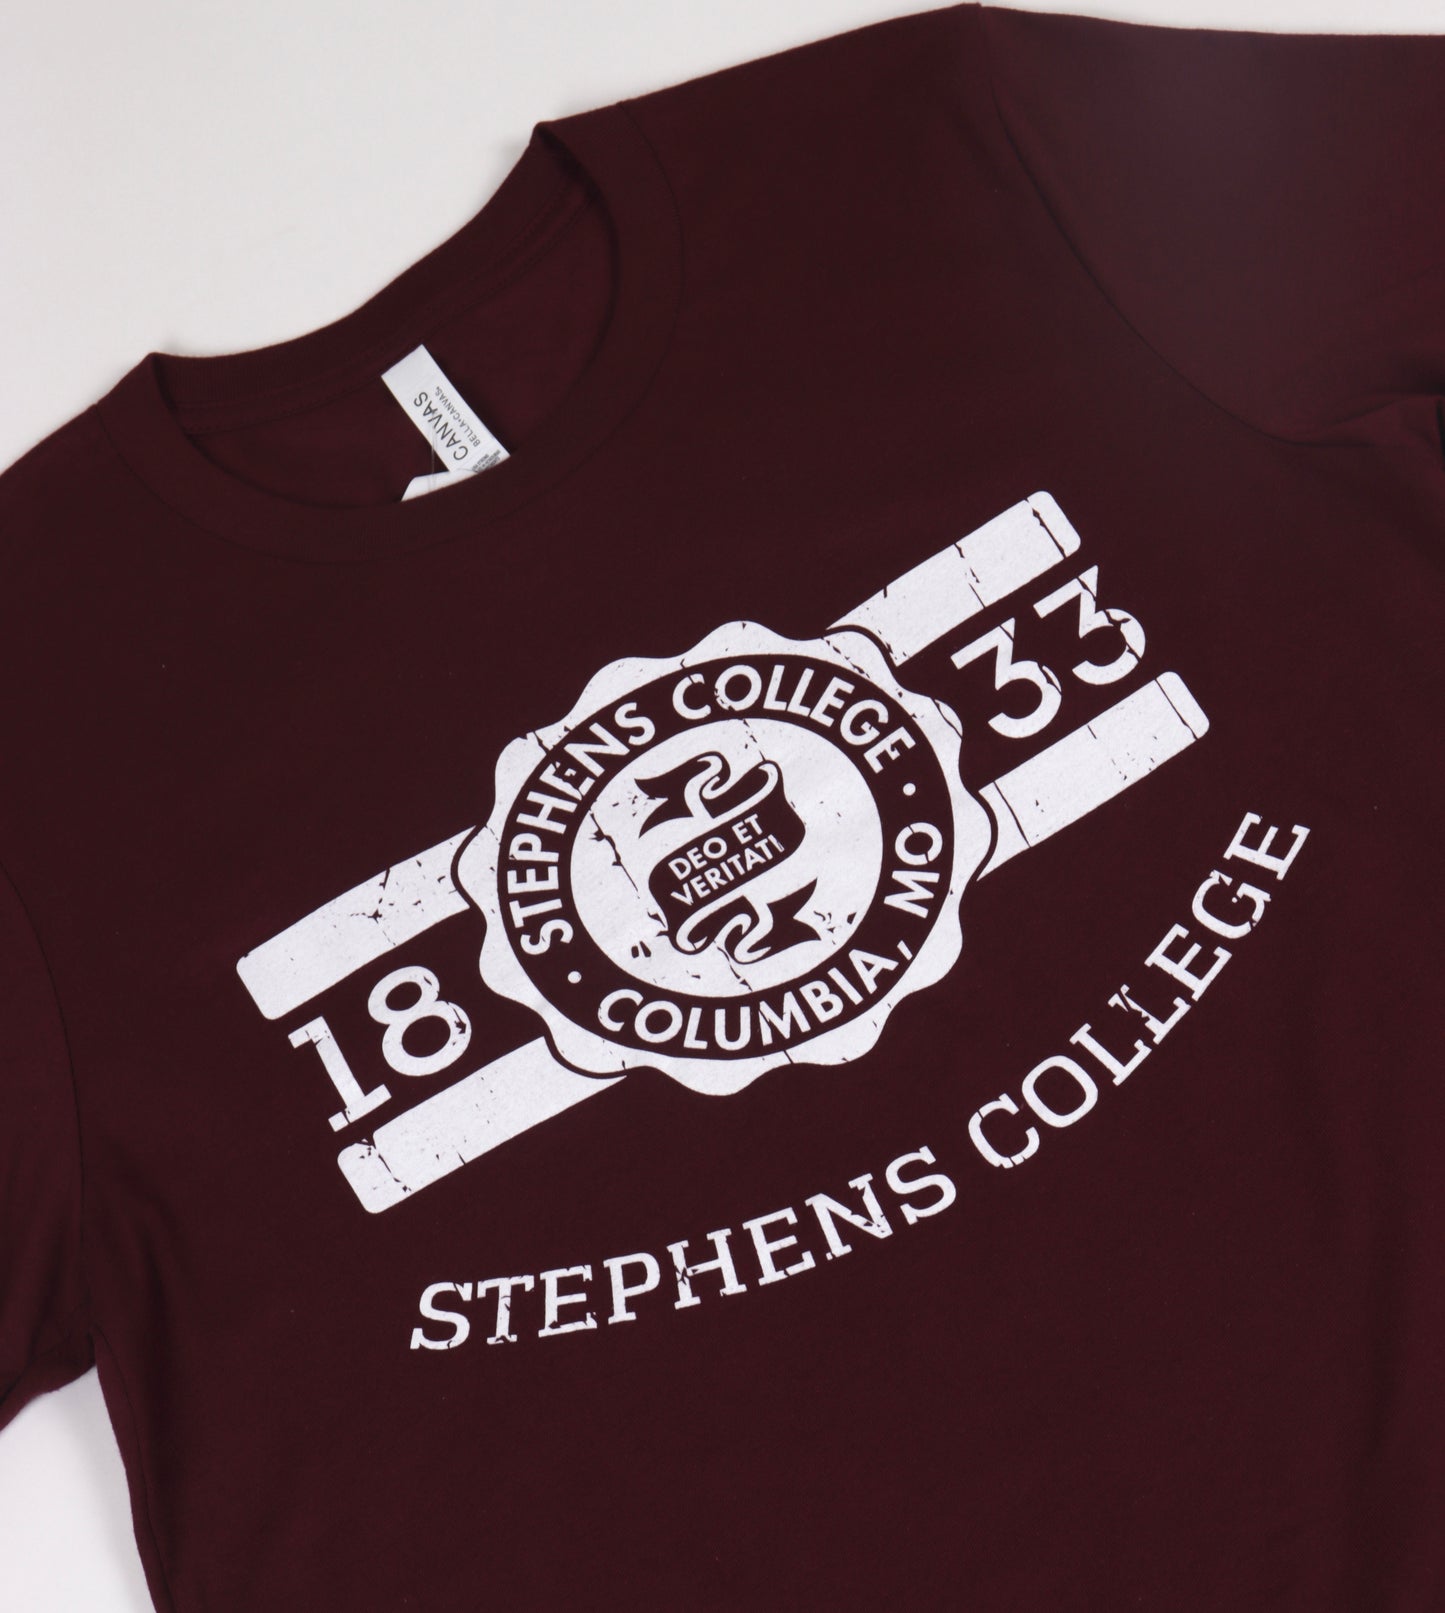 Stephens College 1833 Crest Tee